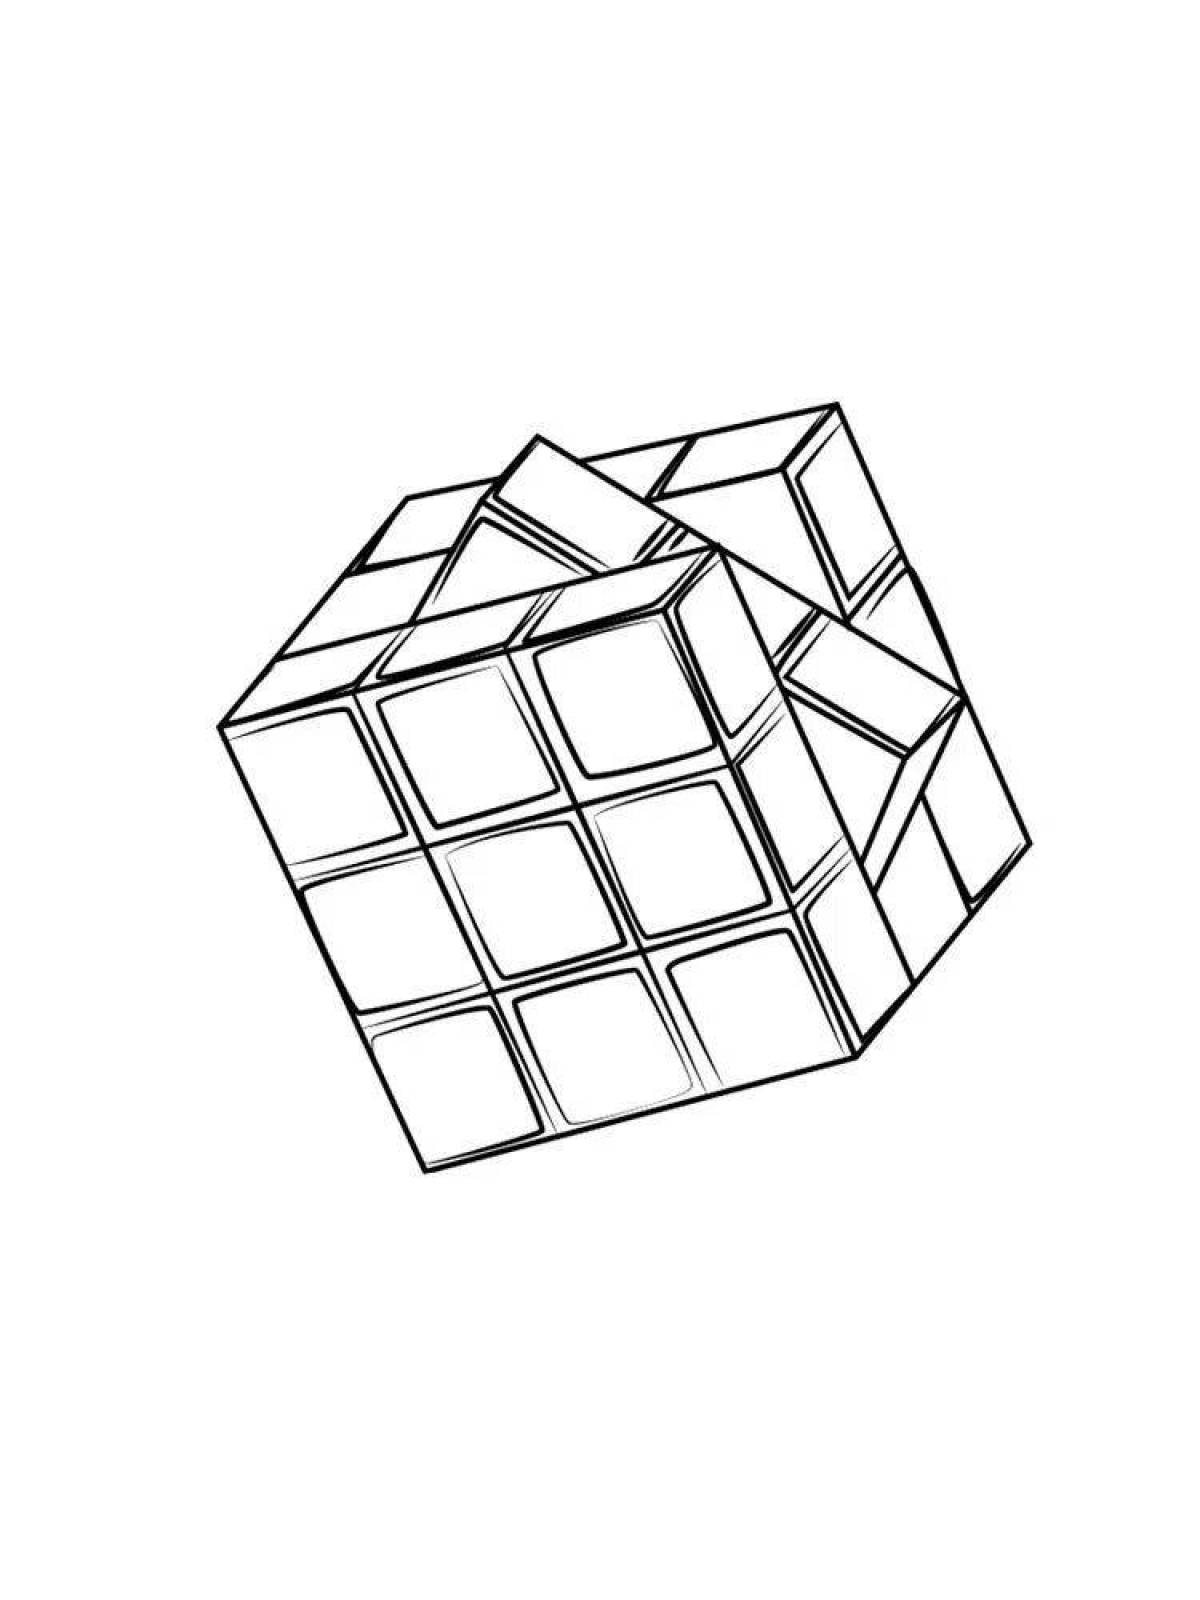 Кубик рубик раскраска для детей